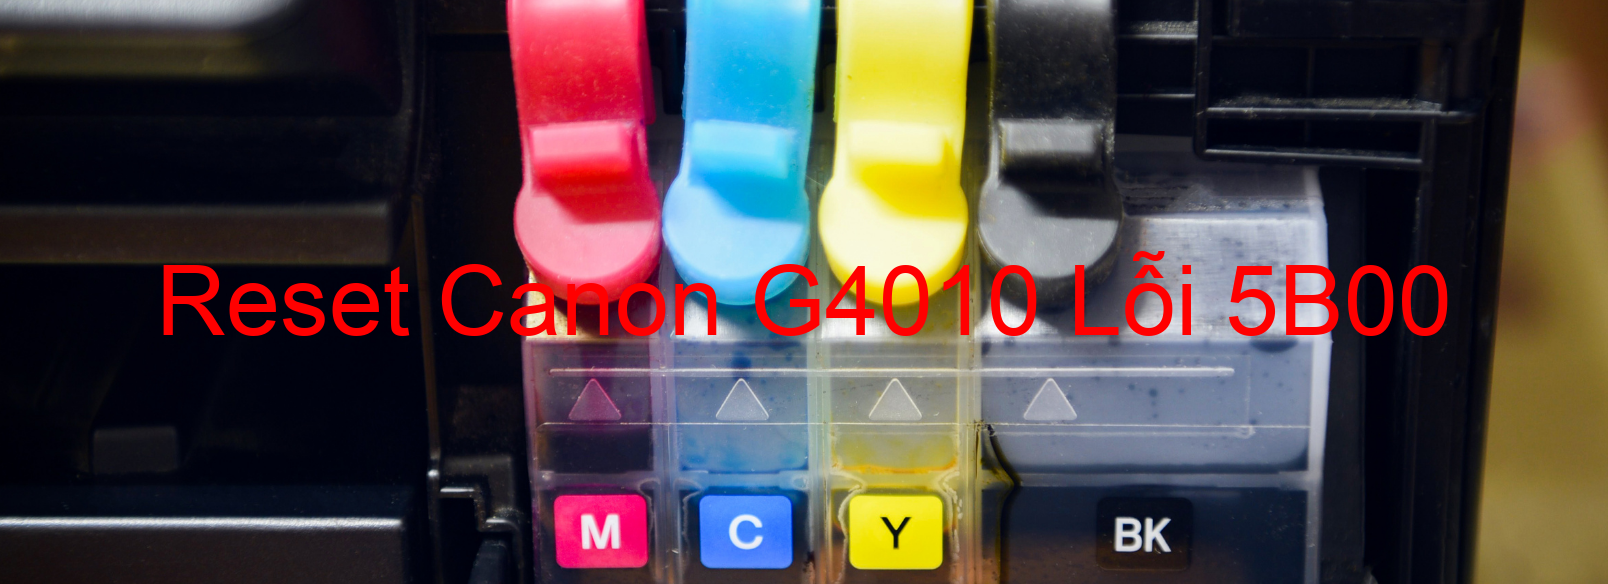 Reset Canon G4010 Lỗi 5B00